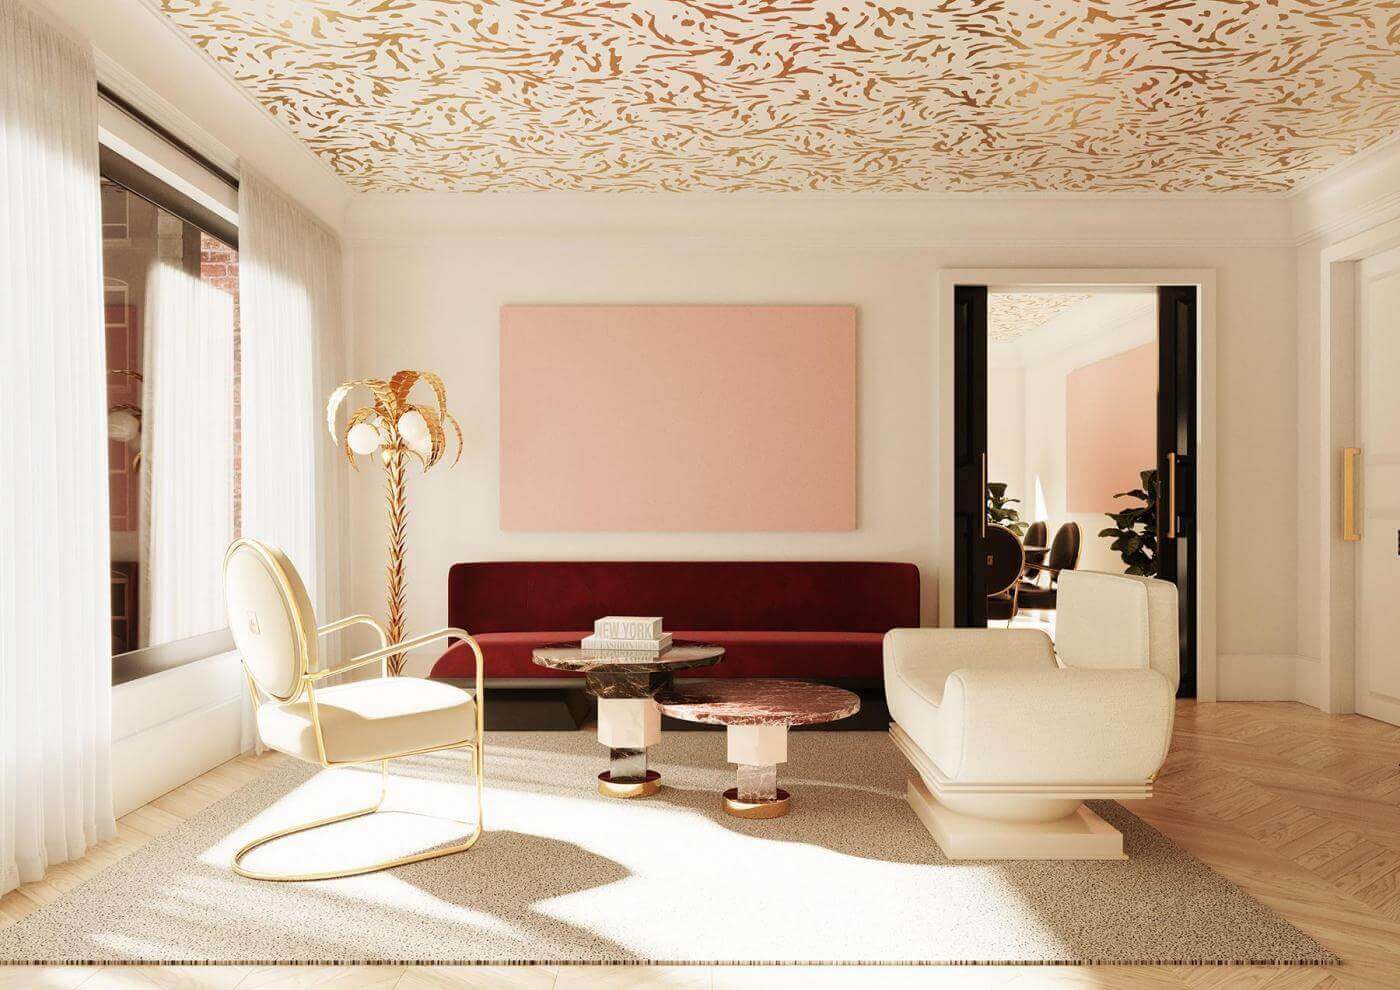 luxury interior design - texture to interior design